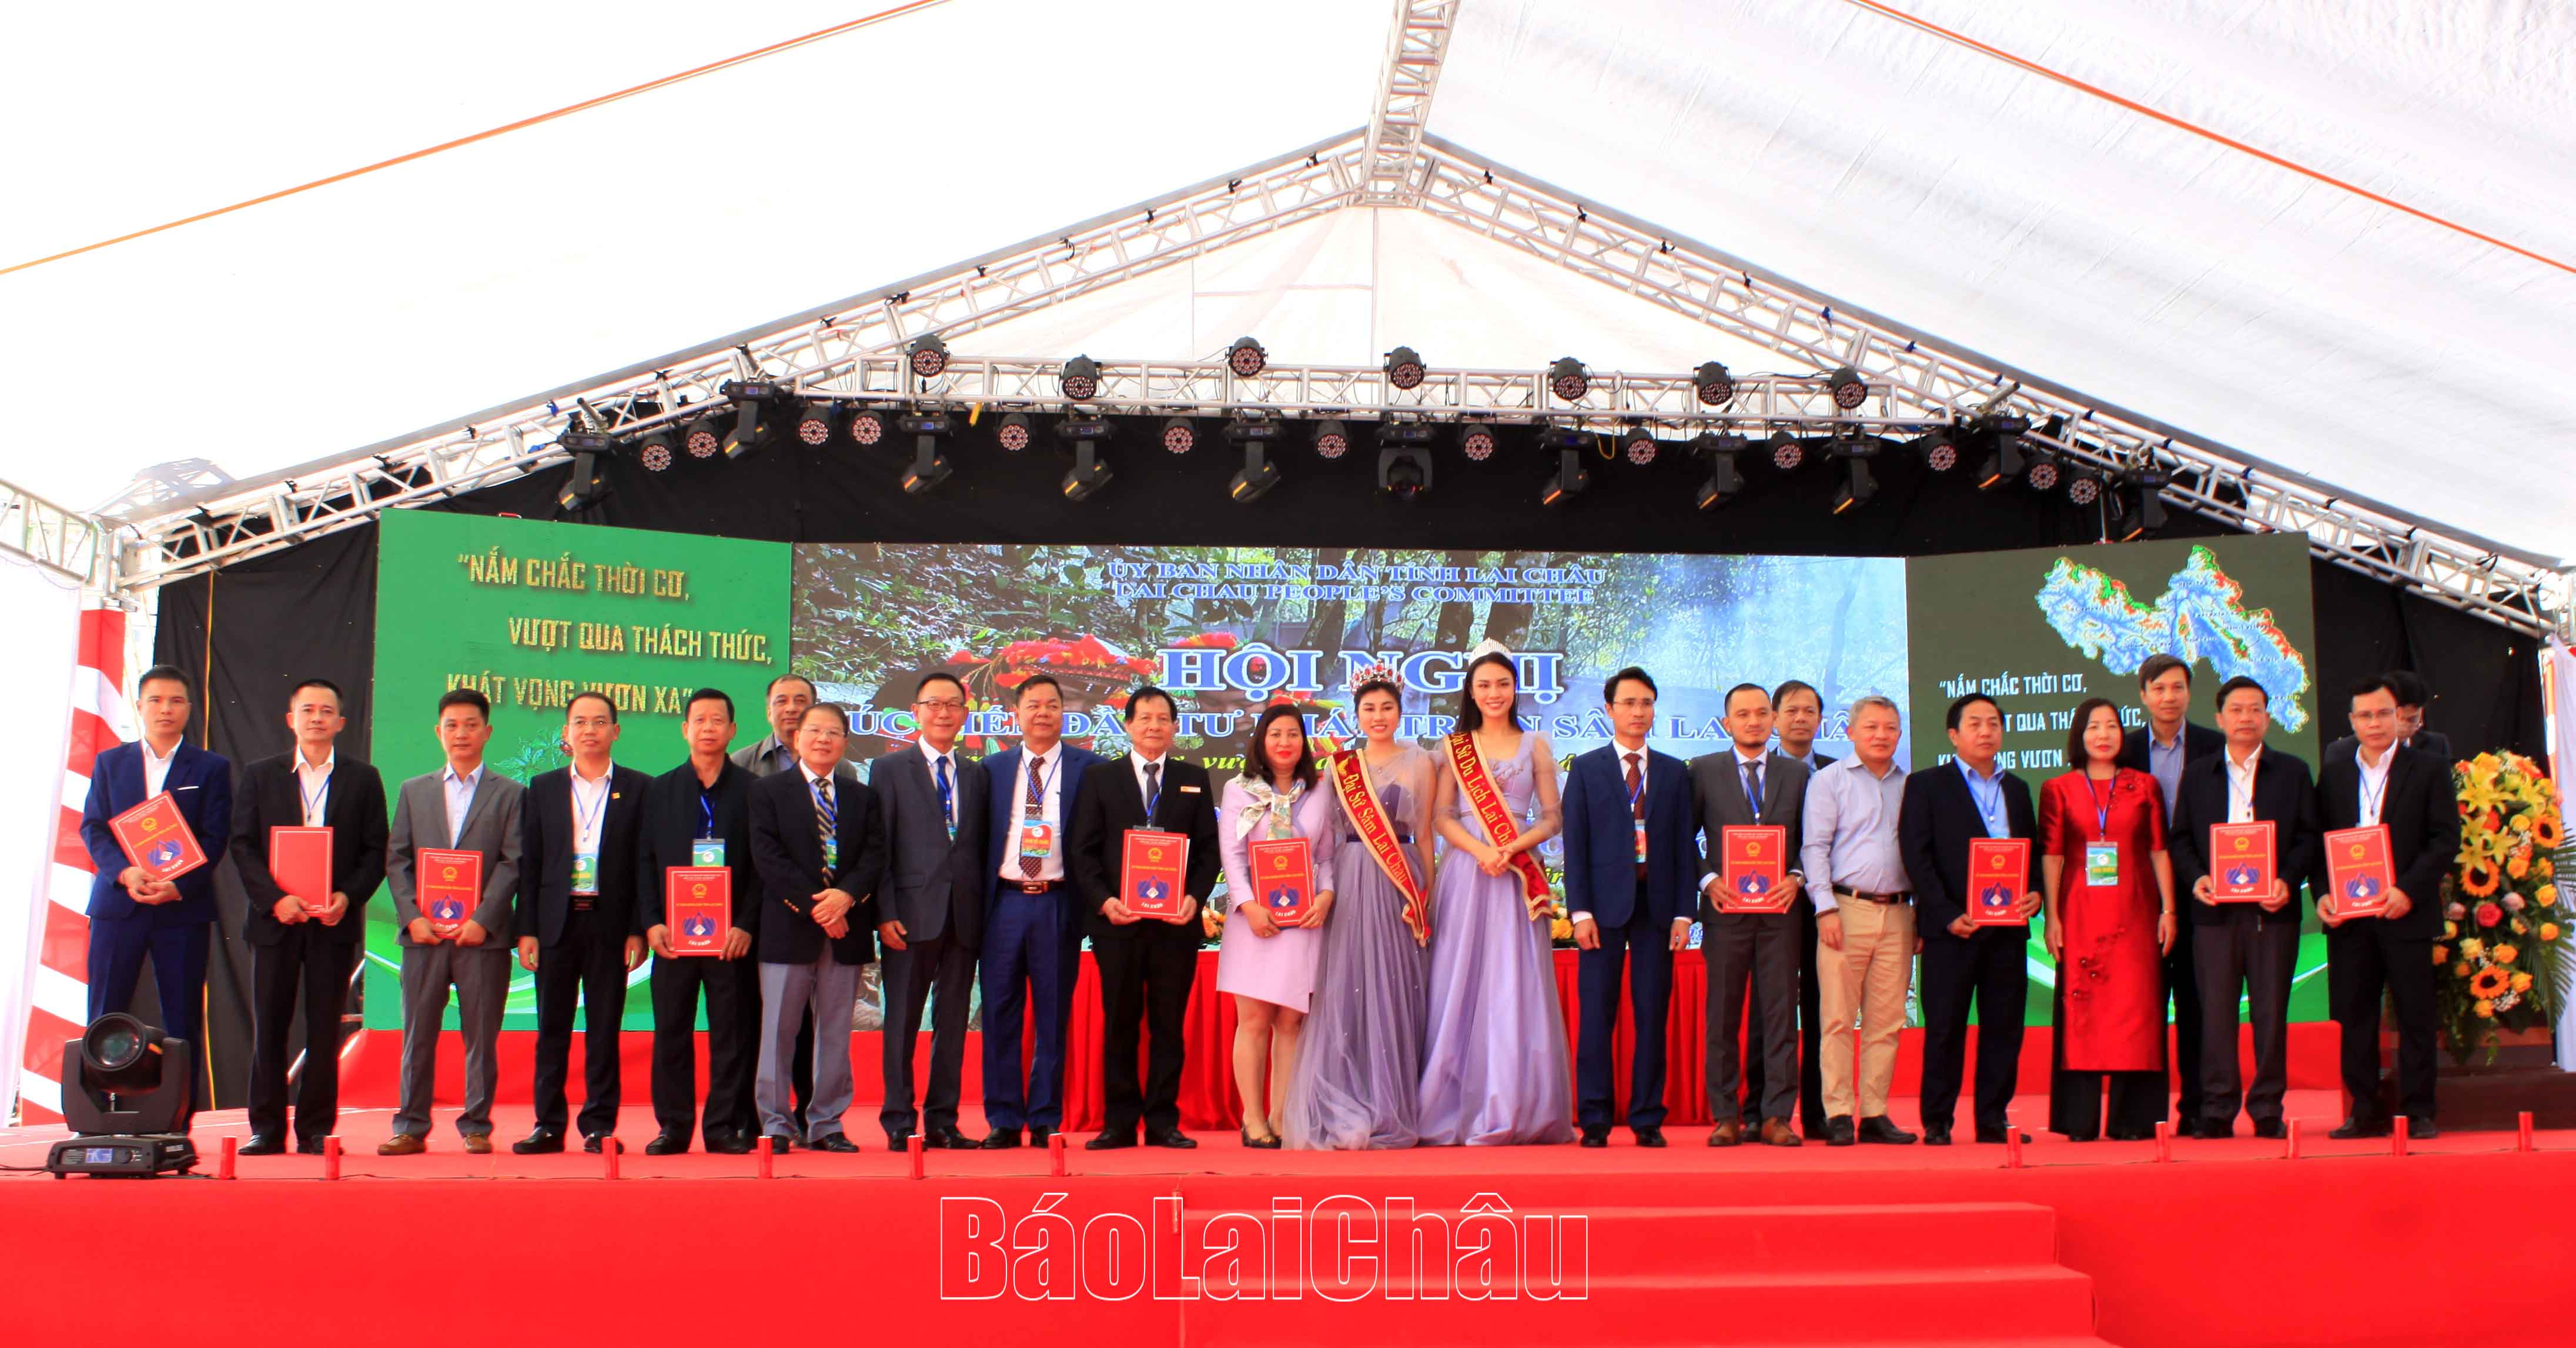 Các đại sứ Sâm Lai Châu, đại sứ Du lịch và các doanh nghiệp cam kết đầu tư tại Lai Châu chụp ảnh lưu niệm cùng các đại biểu tỉnh Lai Châu.